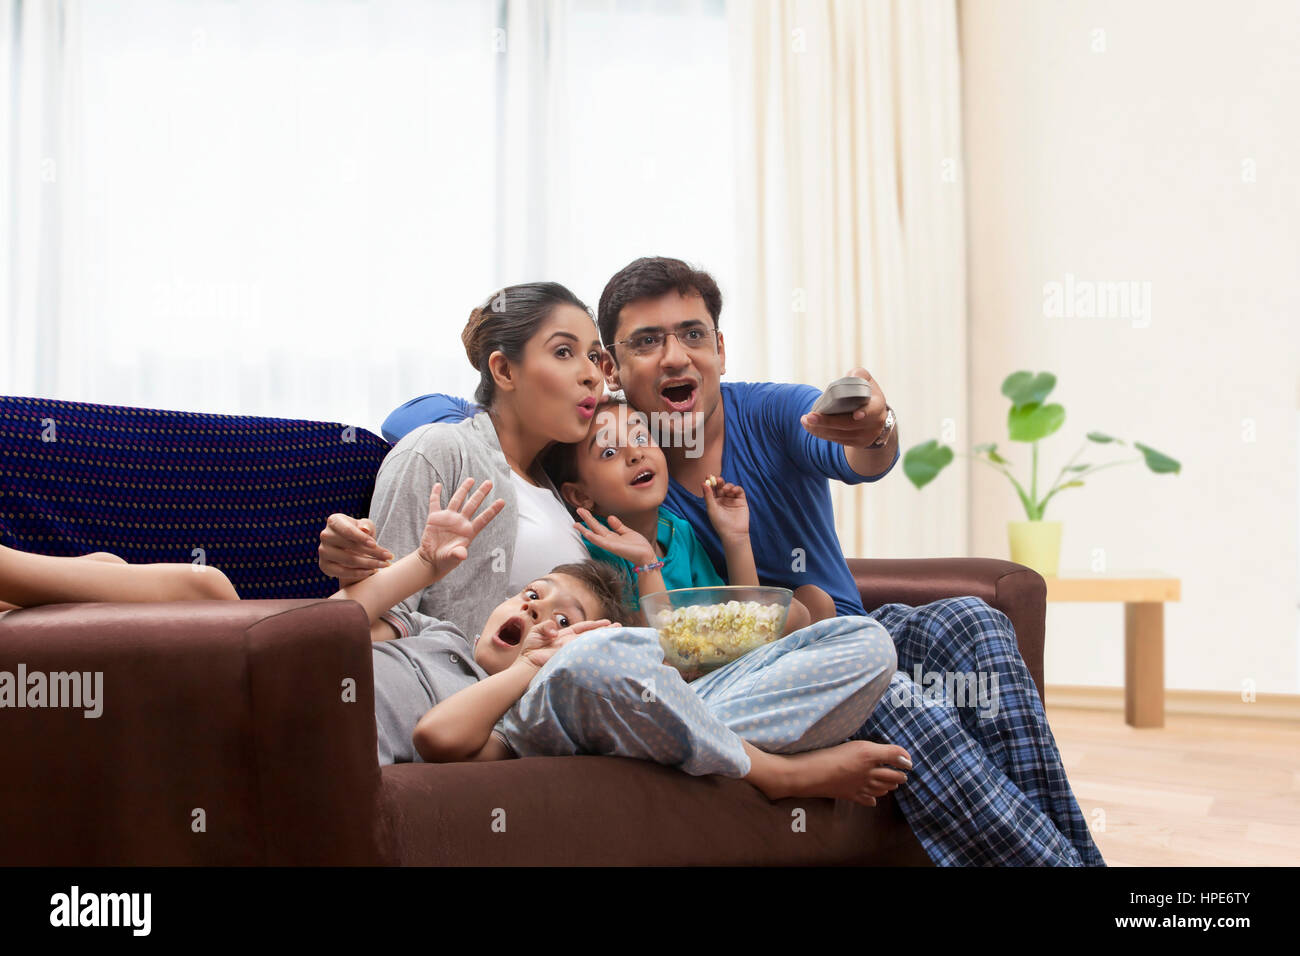 Famille en pyjama à regarder la télévision et eating popcorn Banque D'Images